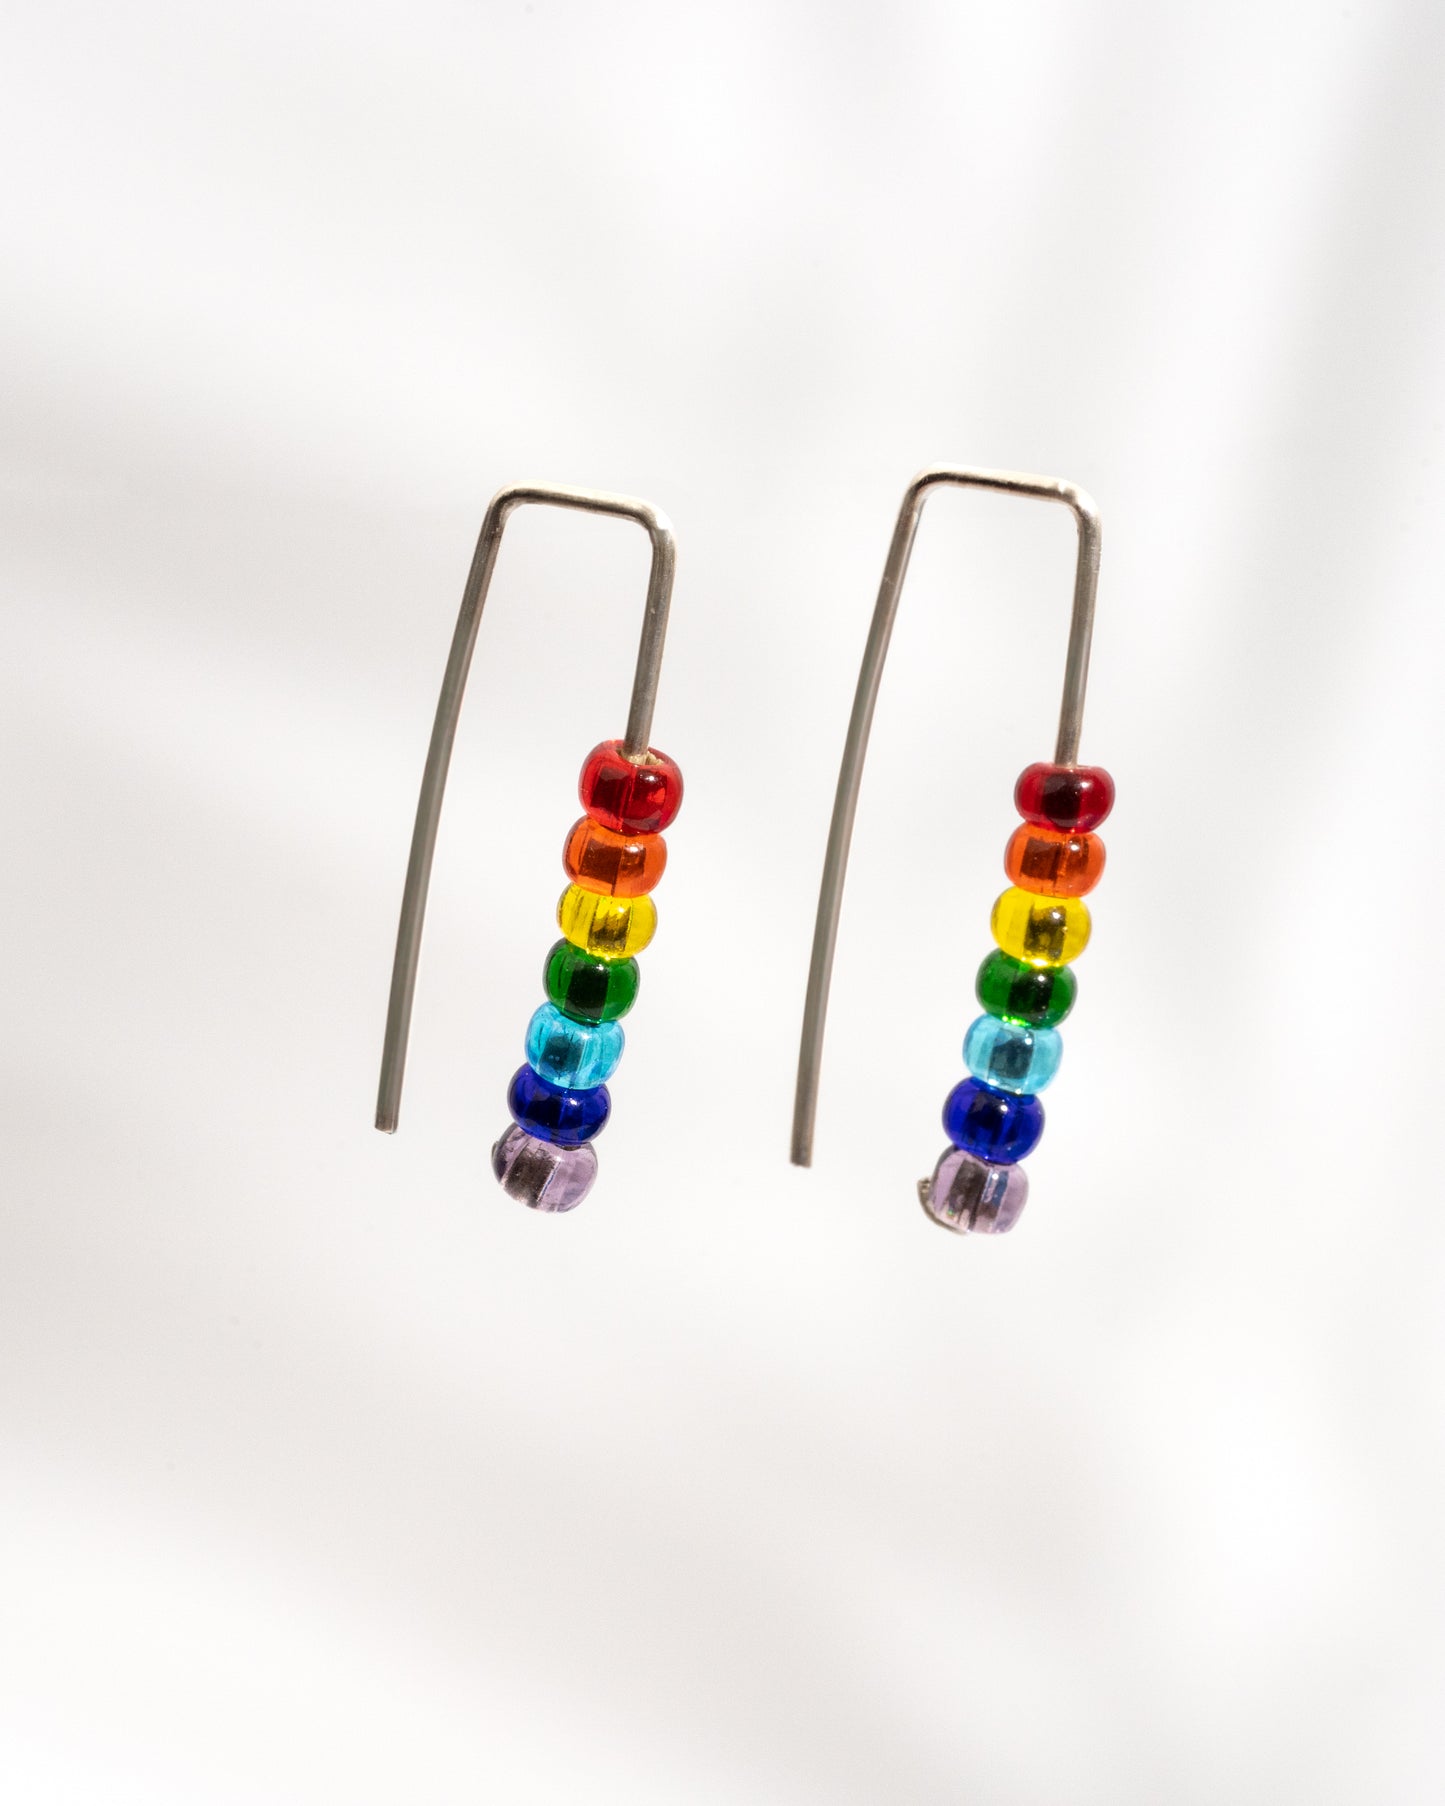 Celebrate Love: PRIDE Rainbow Threader Earrings in Sterling Silver